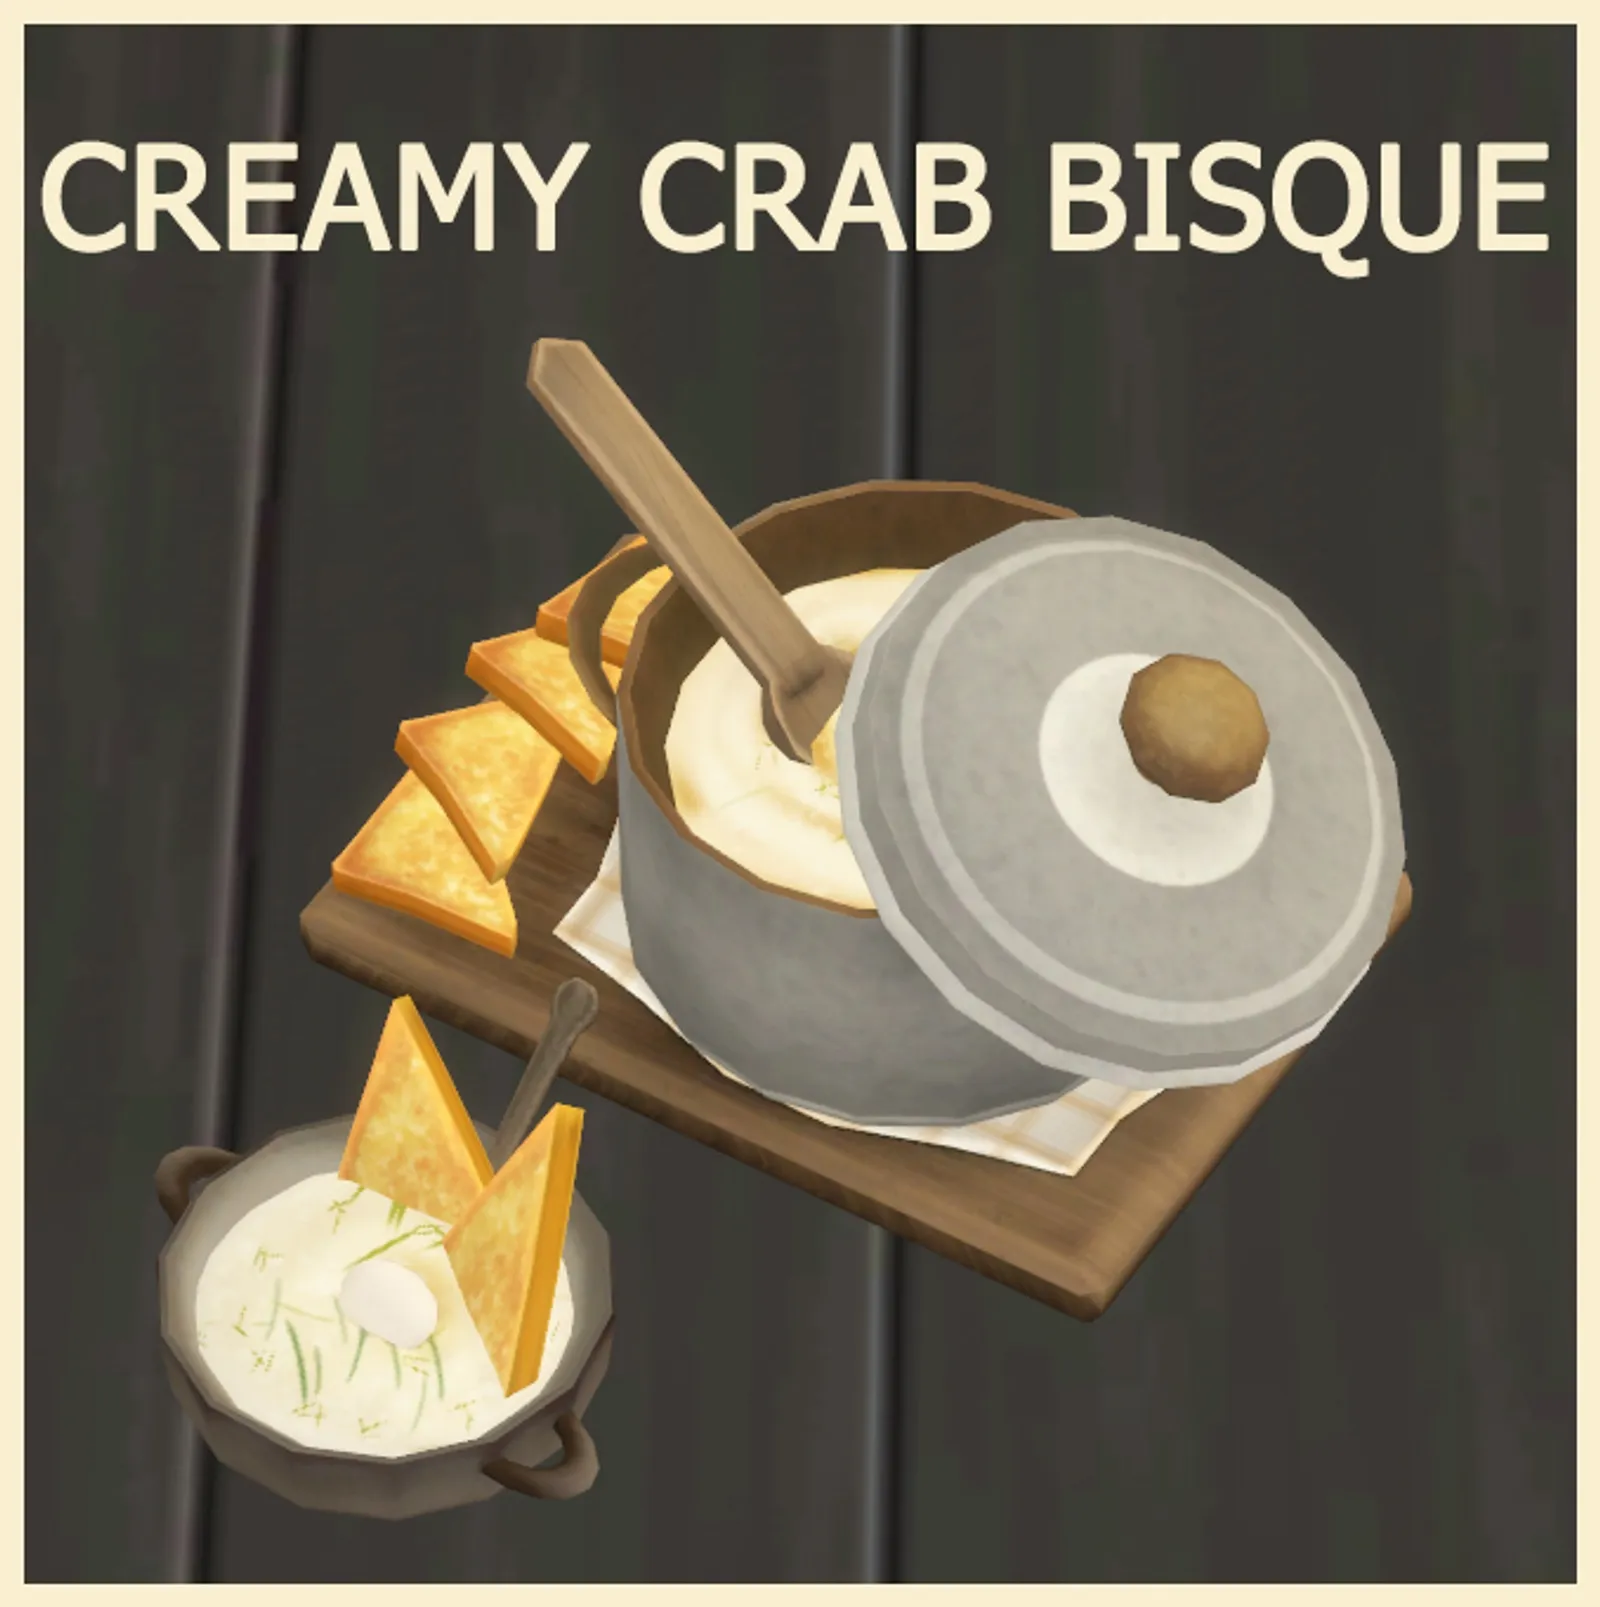 Creamy Crab Bisque